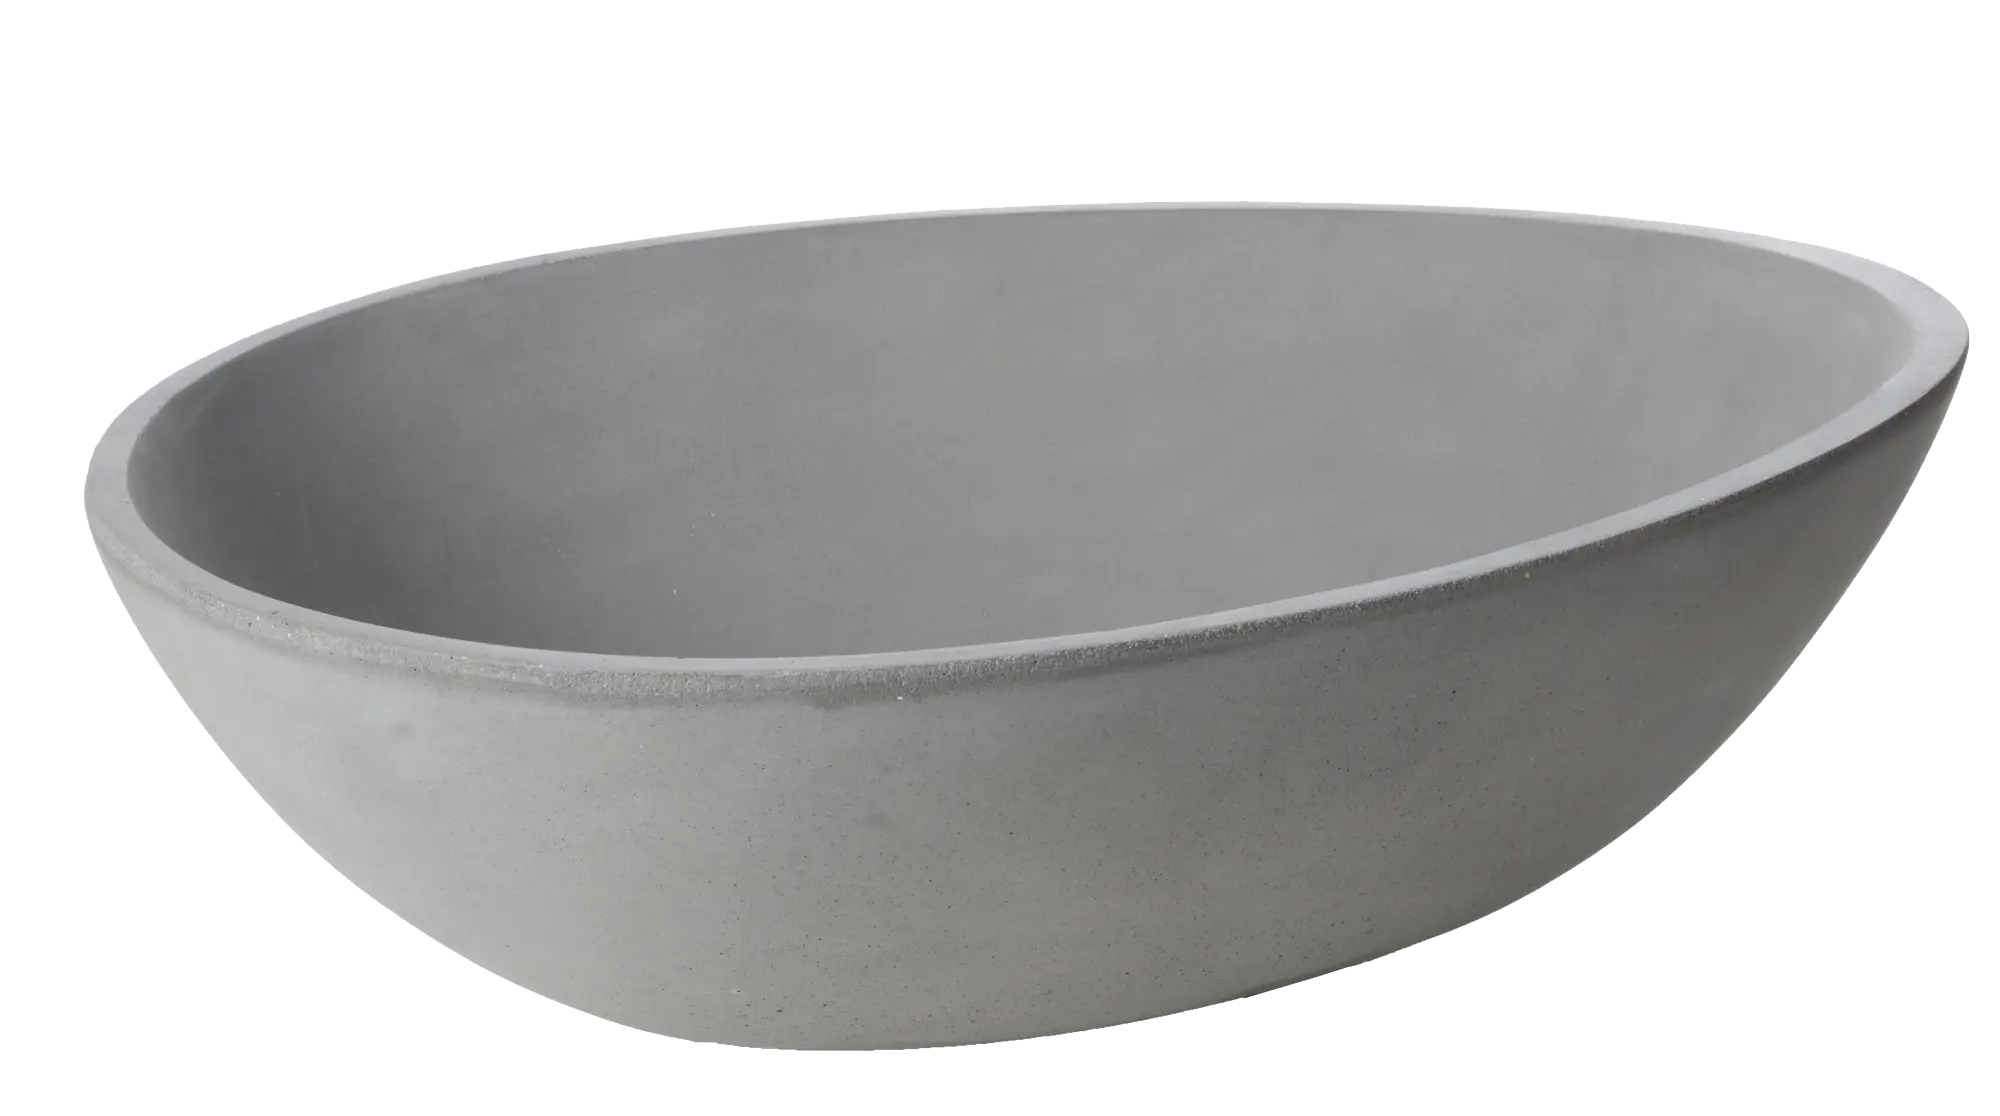 Lavabo spot gris / plata 53x16x38 cm